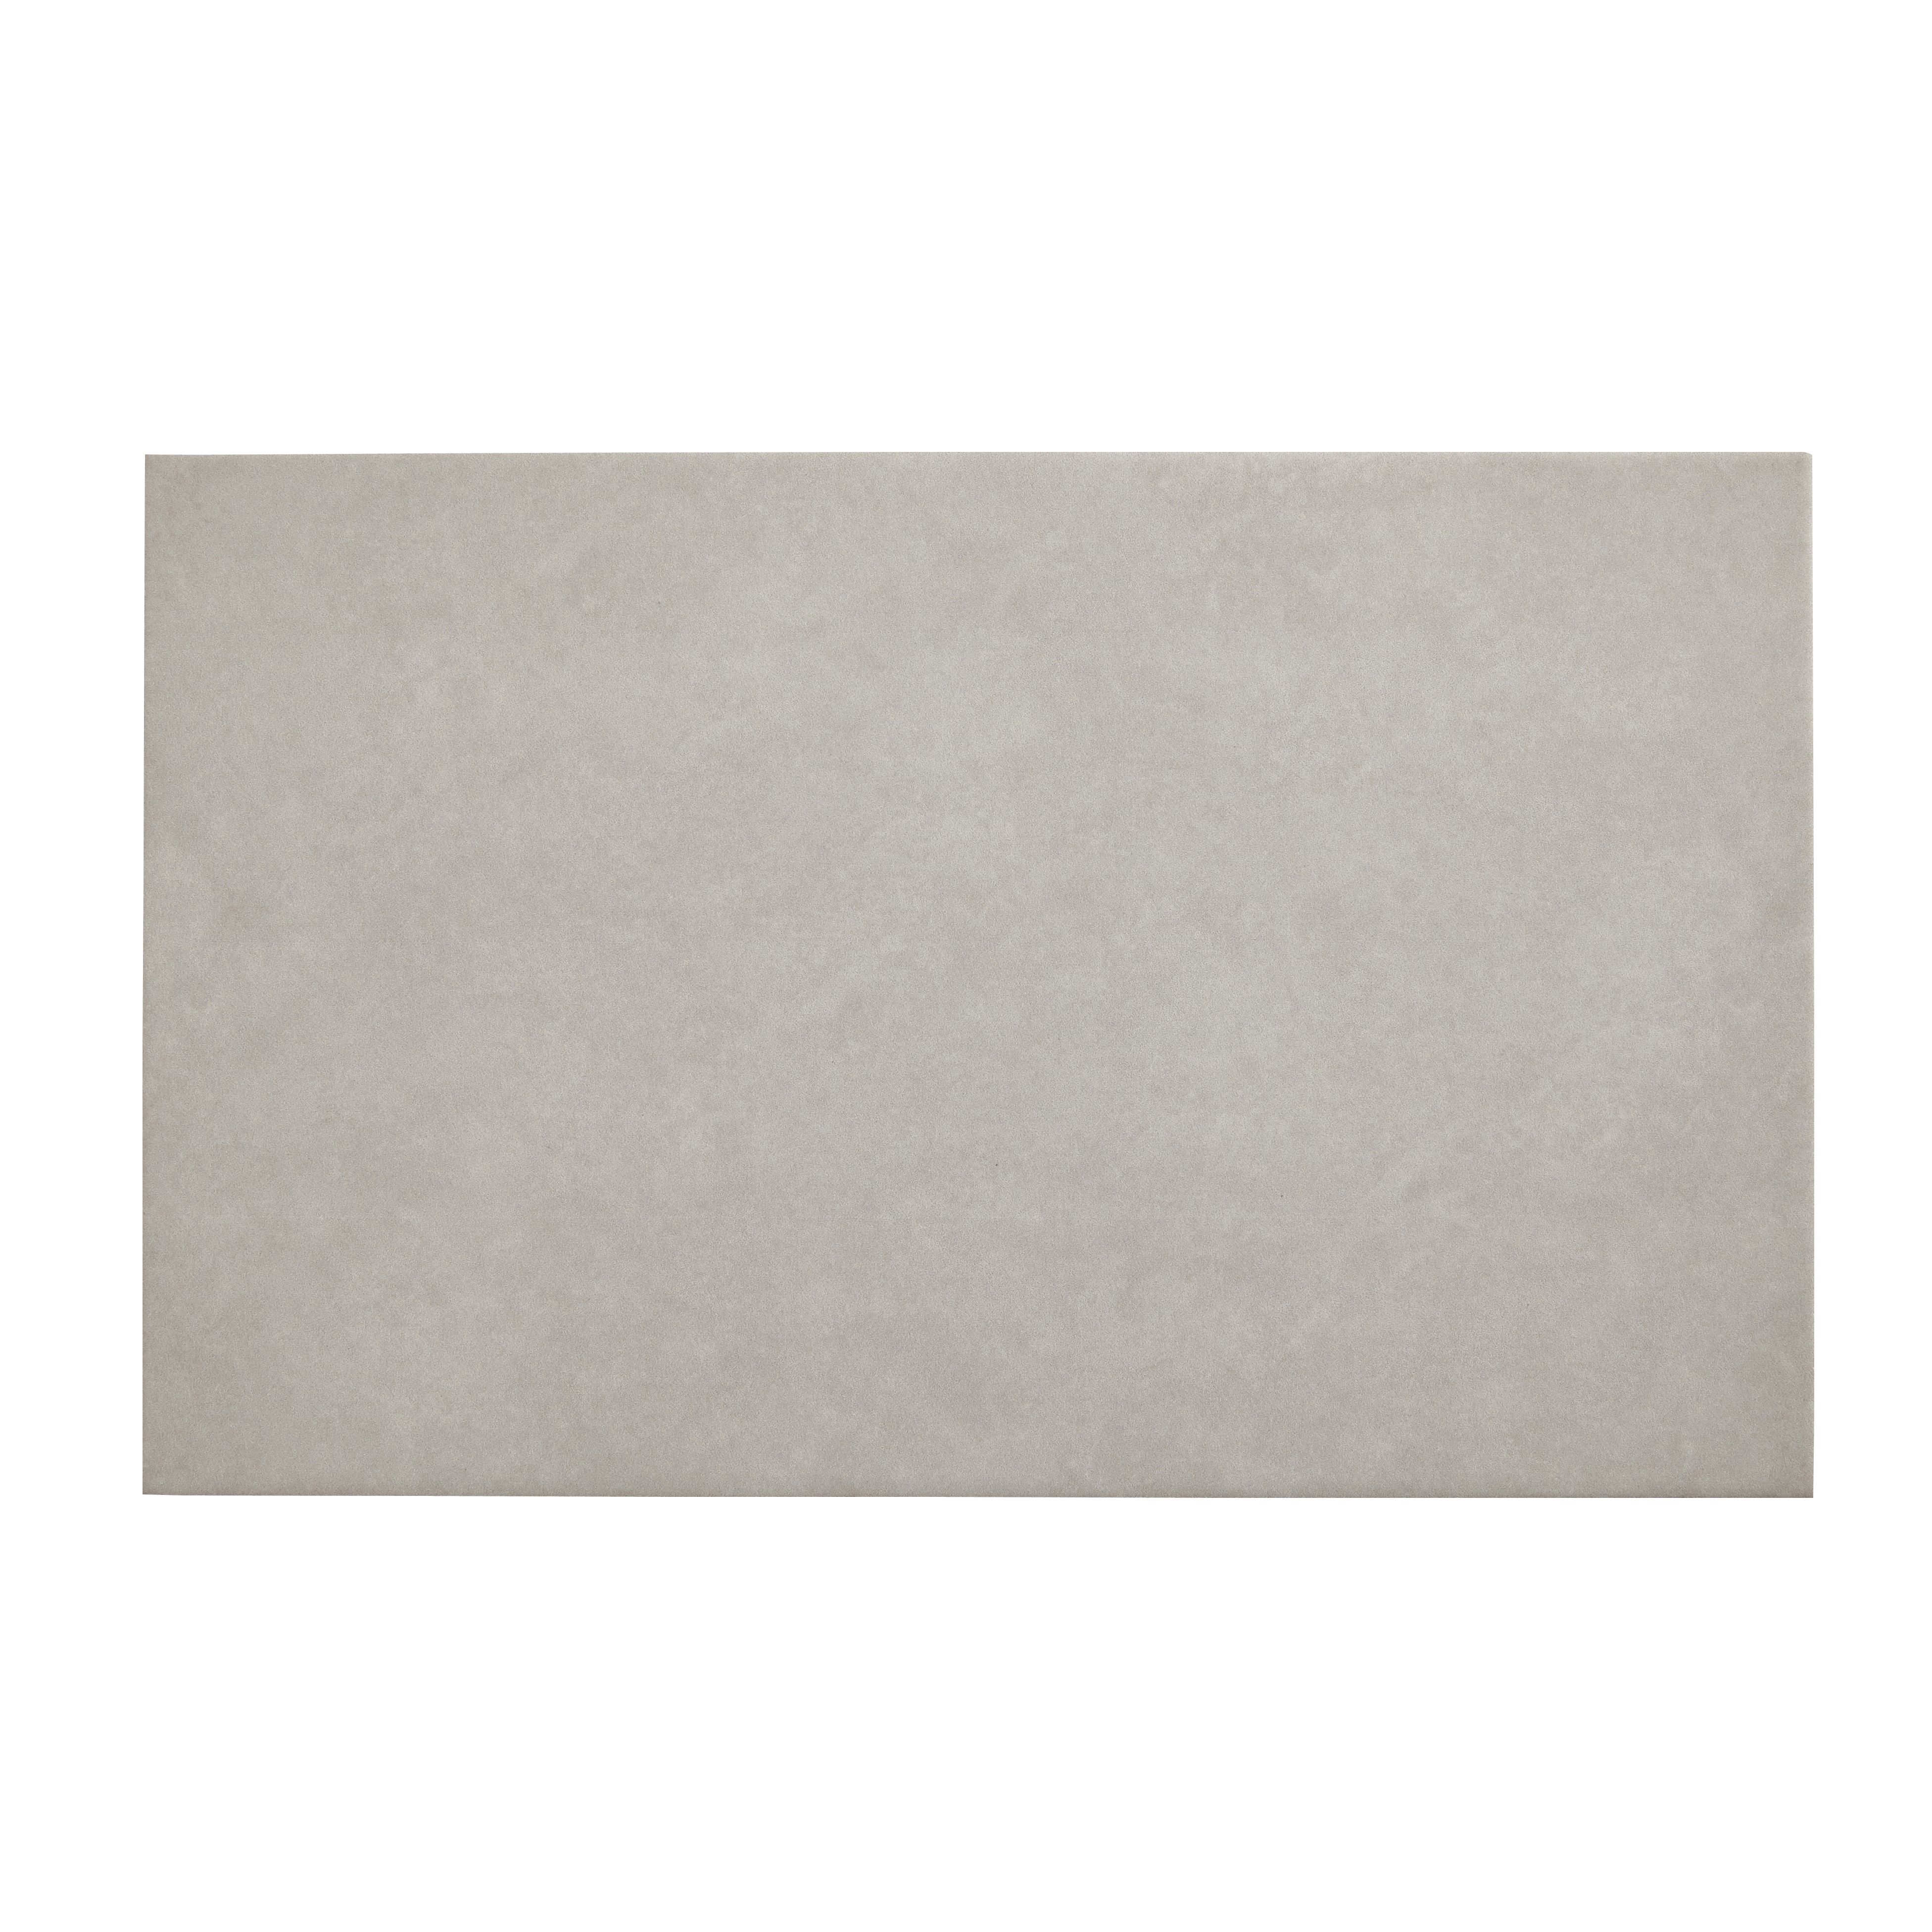 Cimenti Light grey Plain Ceramic Wall tile, 1, Sample